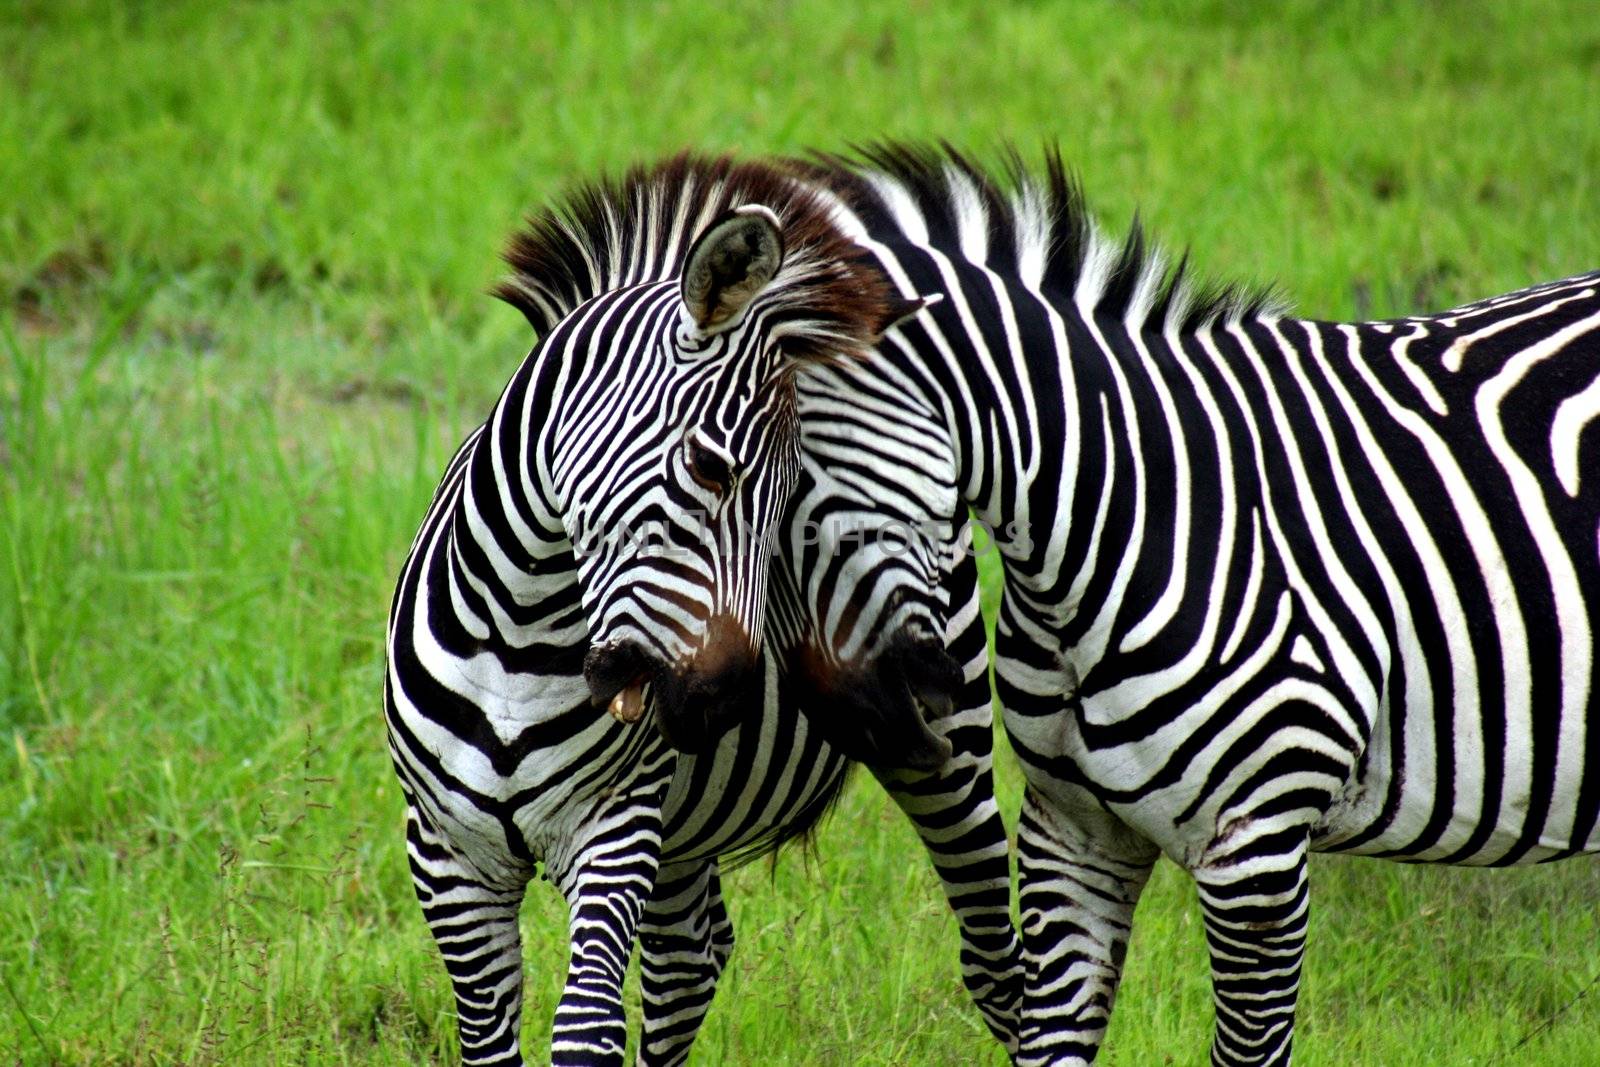 Zambia Zebras